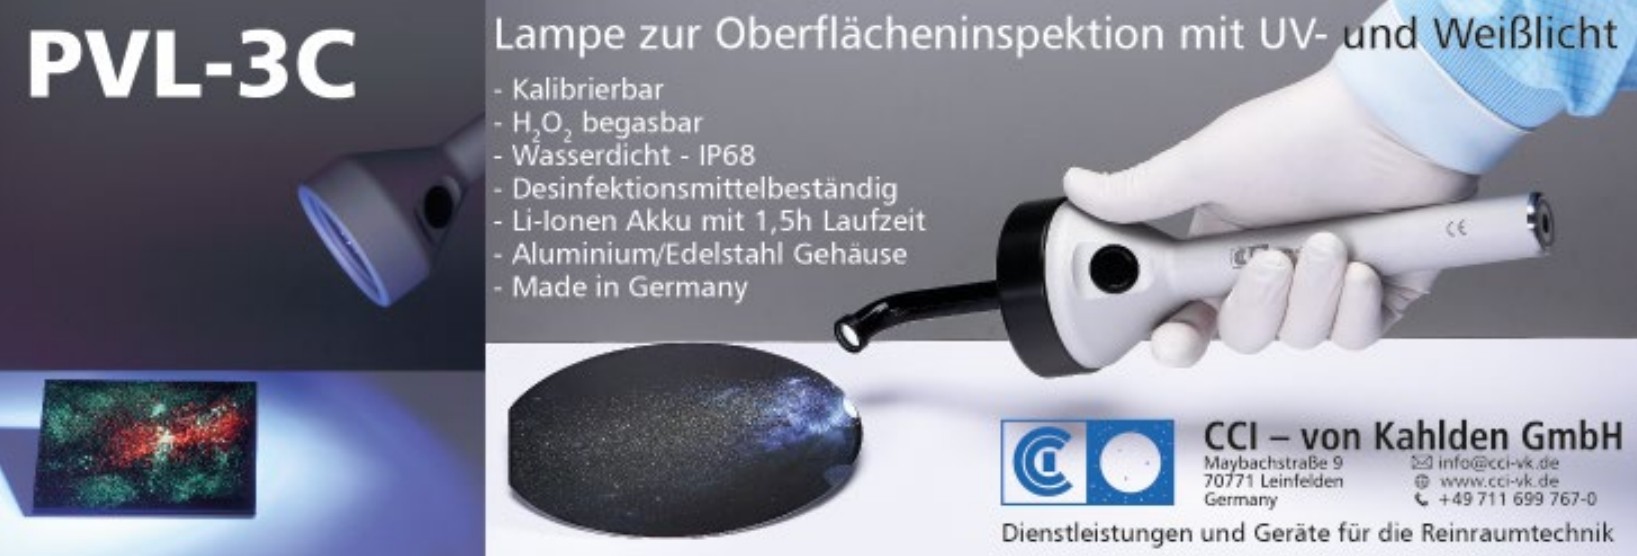 CCI – von Kahlden GmbH